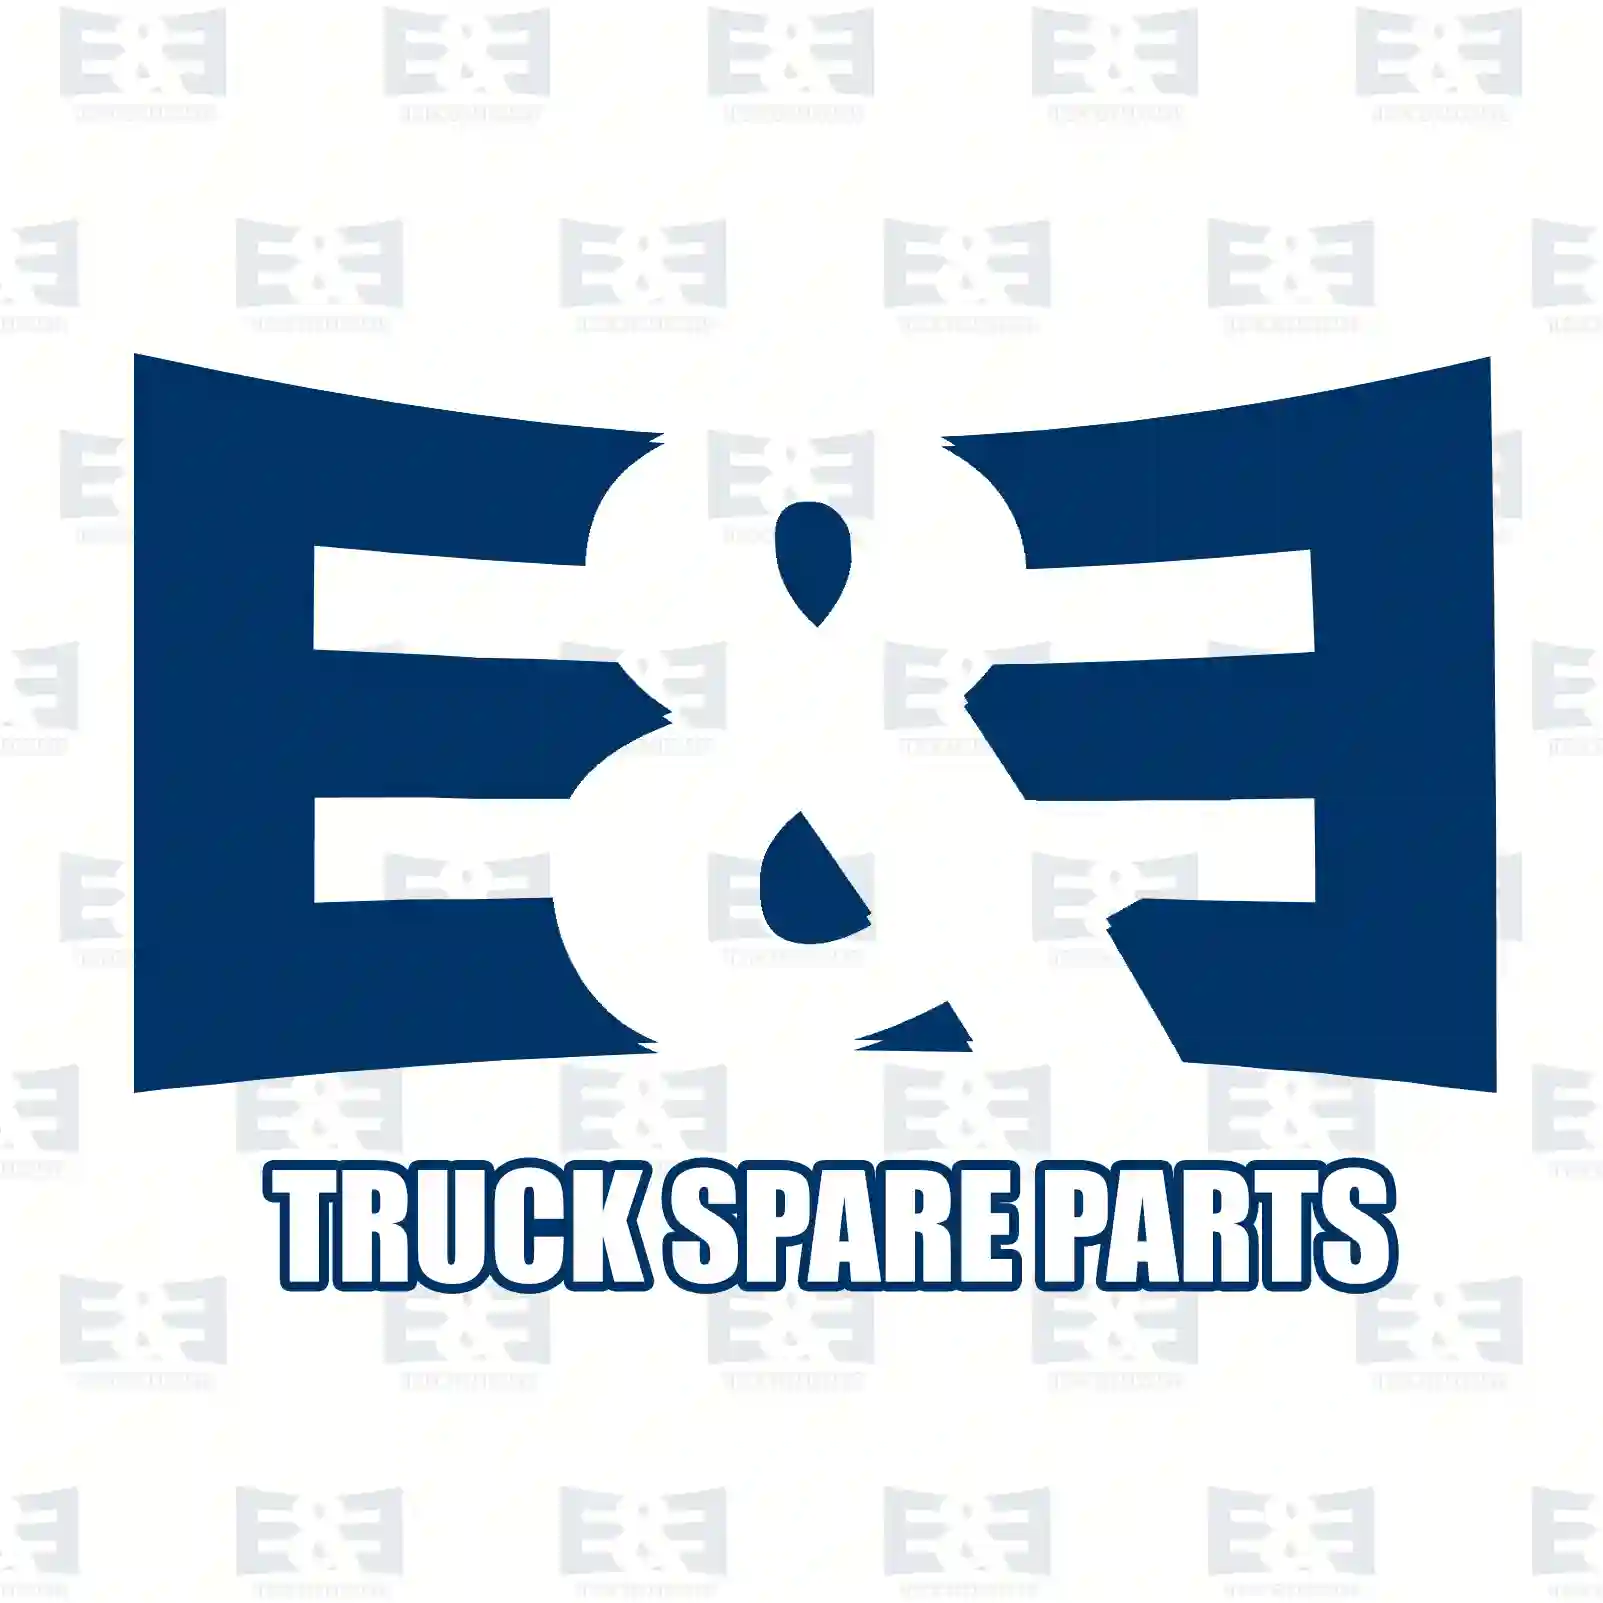  Crankshaft bearing, compressor || E&E Truck Spare Parts | Truck Spare Parts, Auotomotive Spare Parts